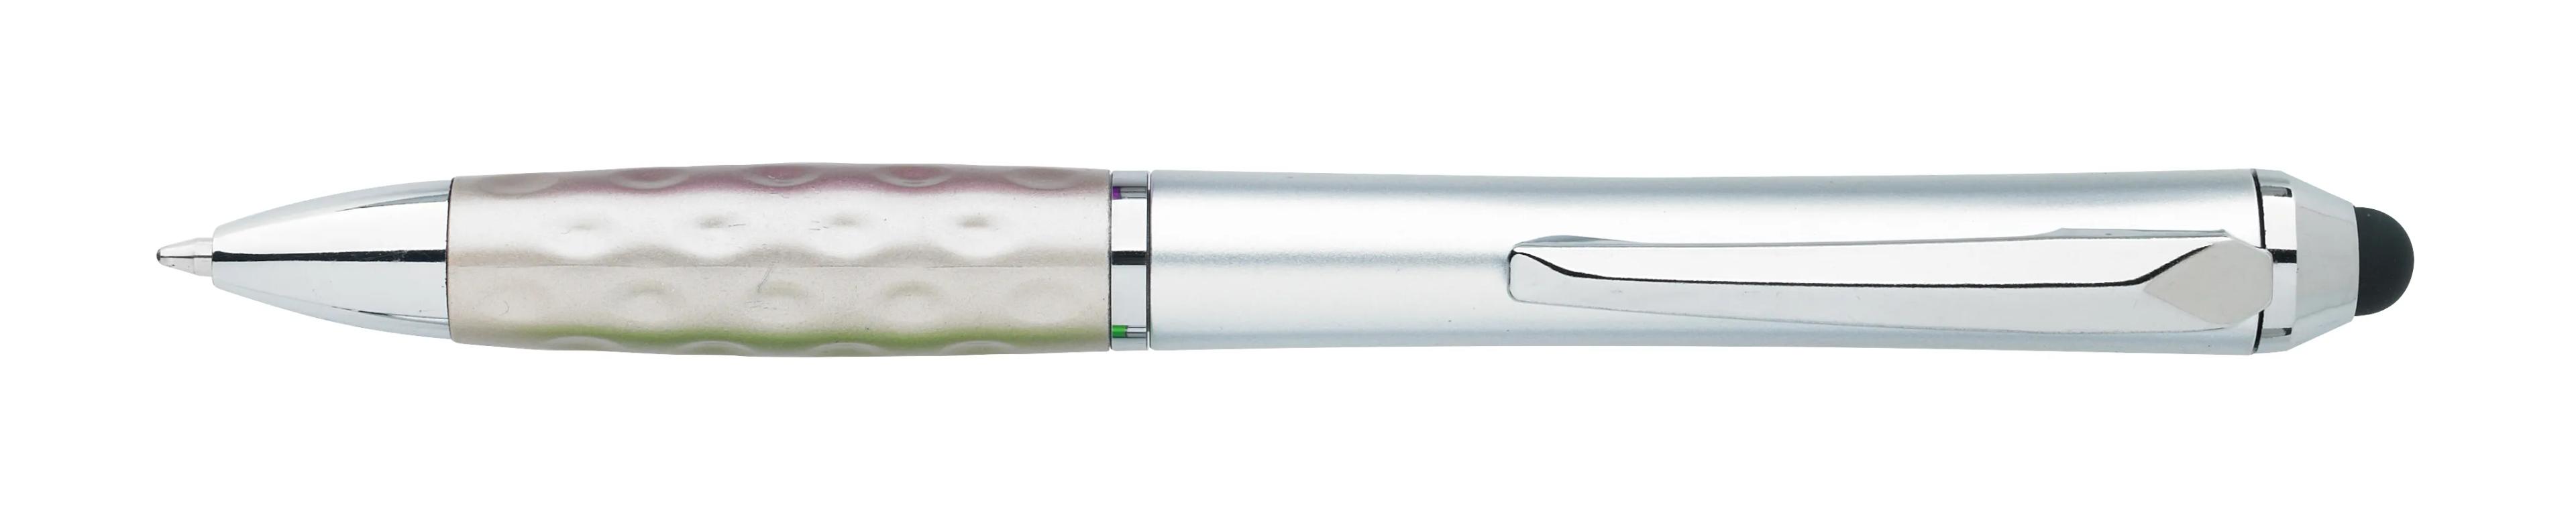 Tev Silver Stylus Pen 2 of 55